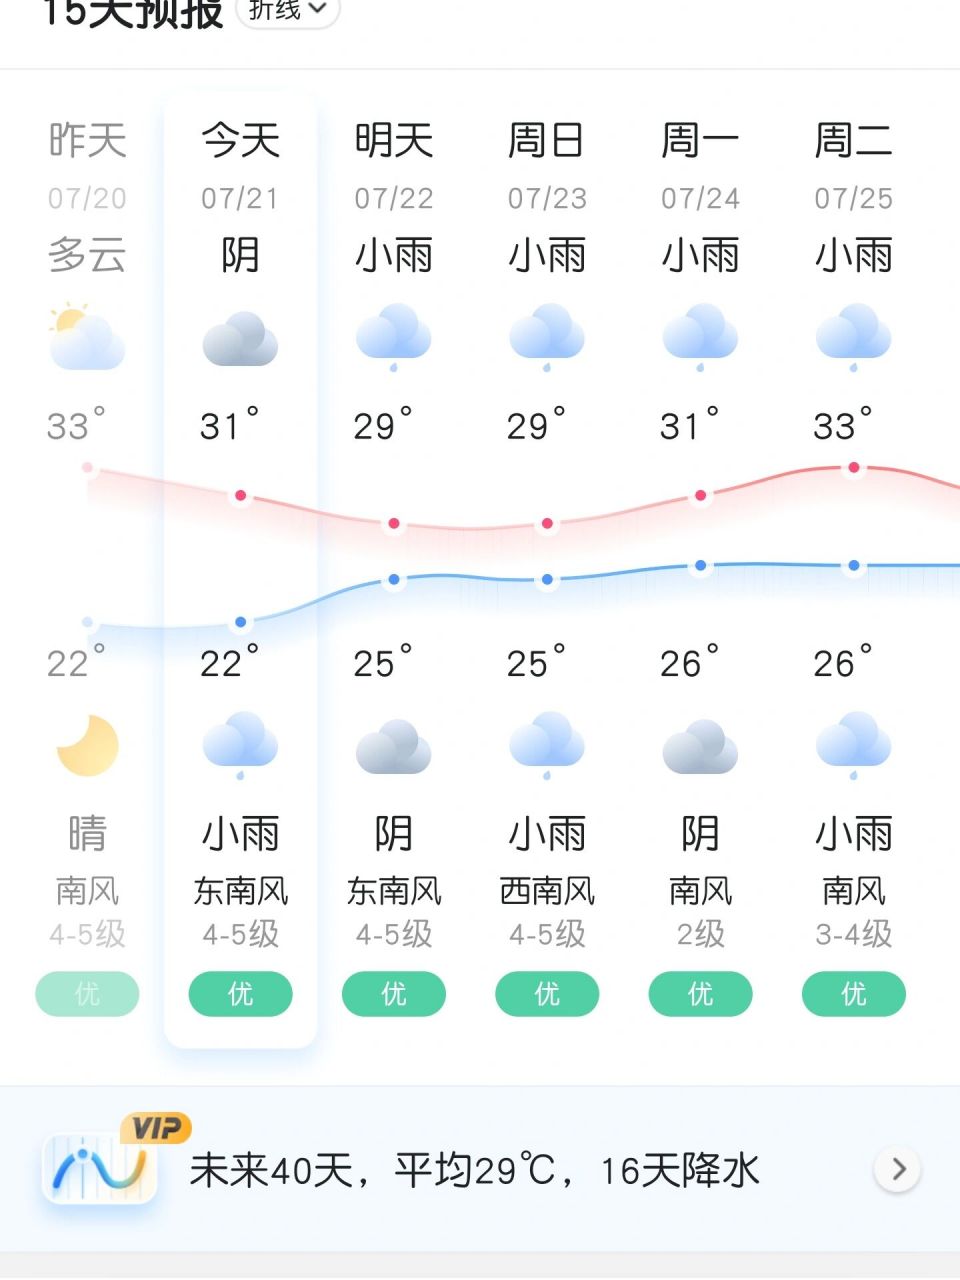 威海实时天气20230721 今天预报天气阴天有雨,实际现在晴天多云